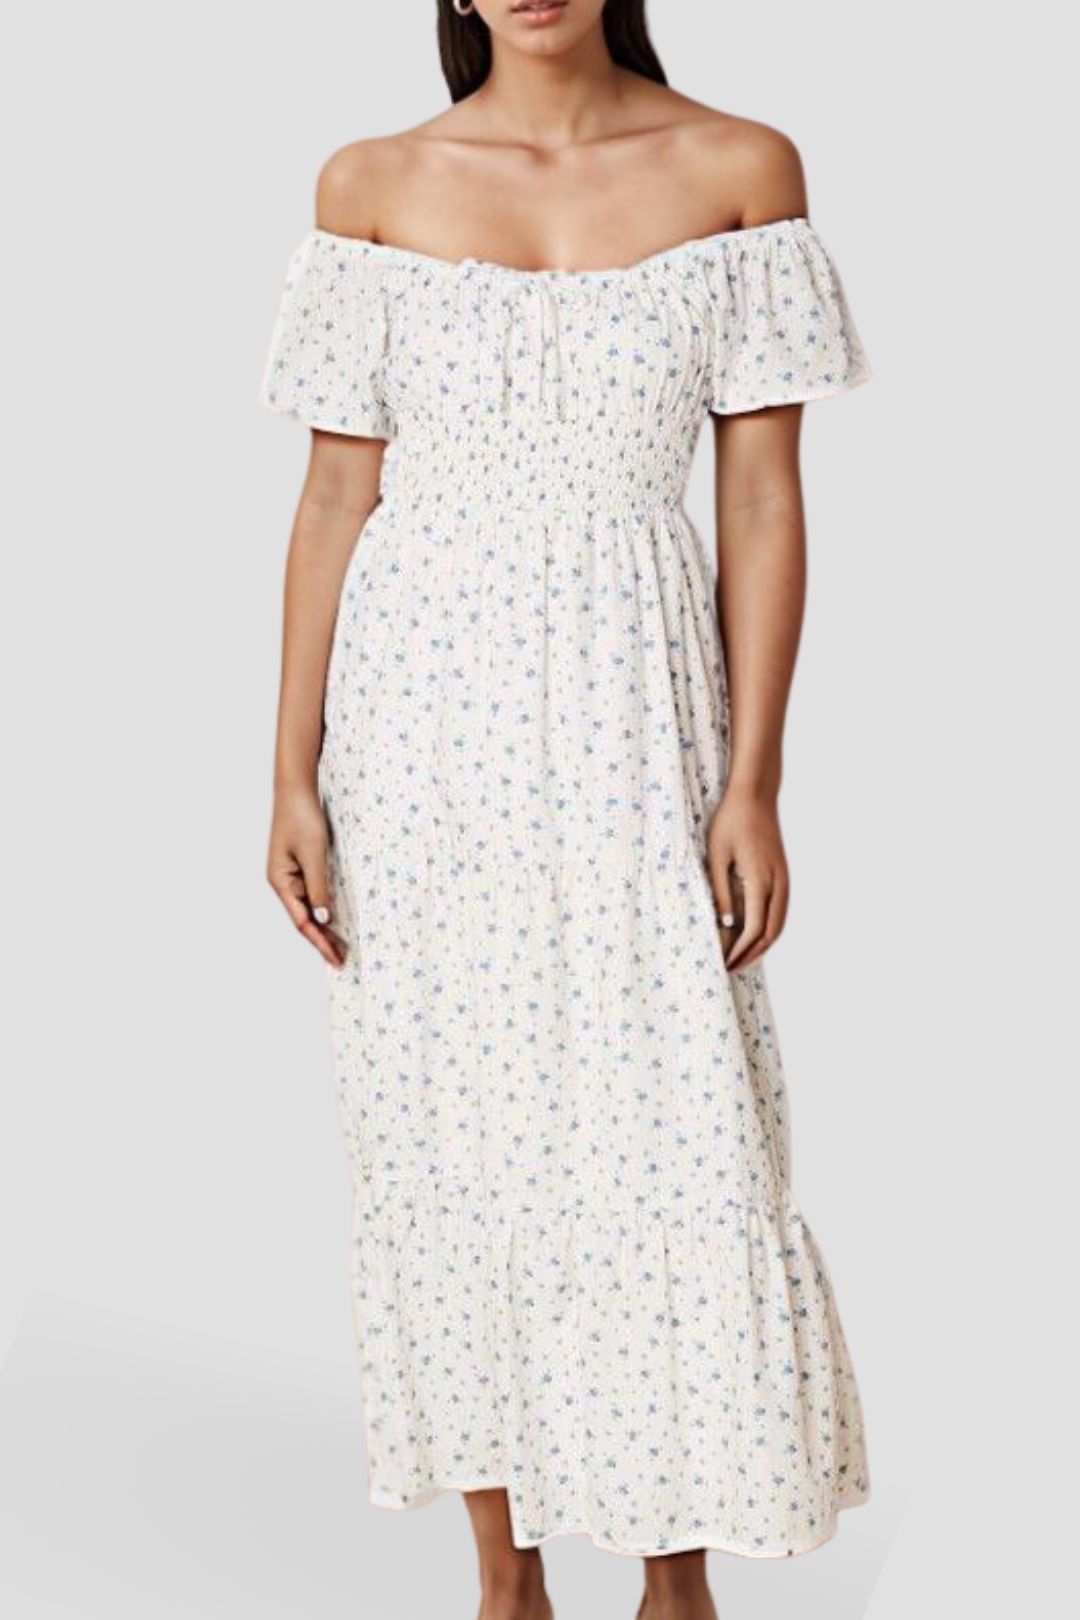 Faithfull Matisse Midi Dress